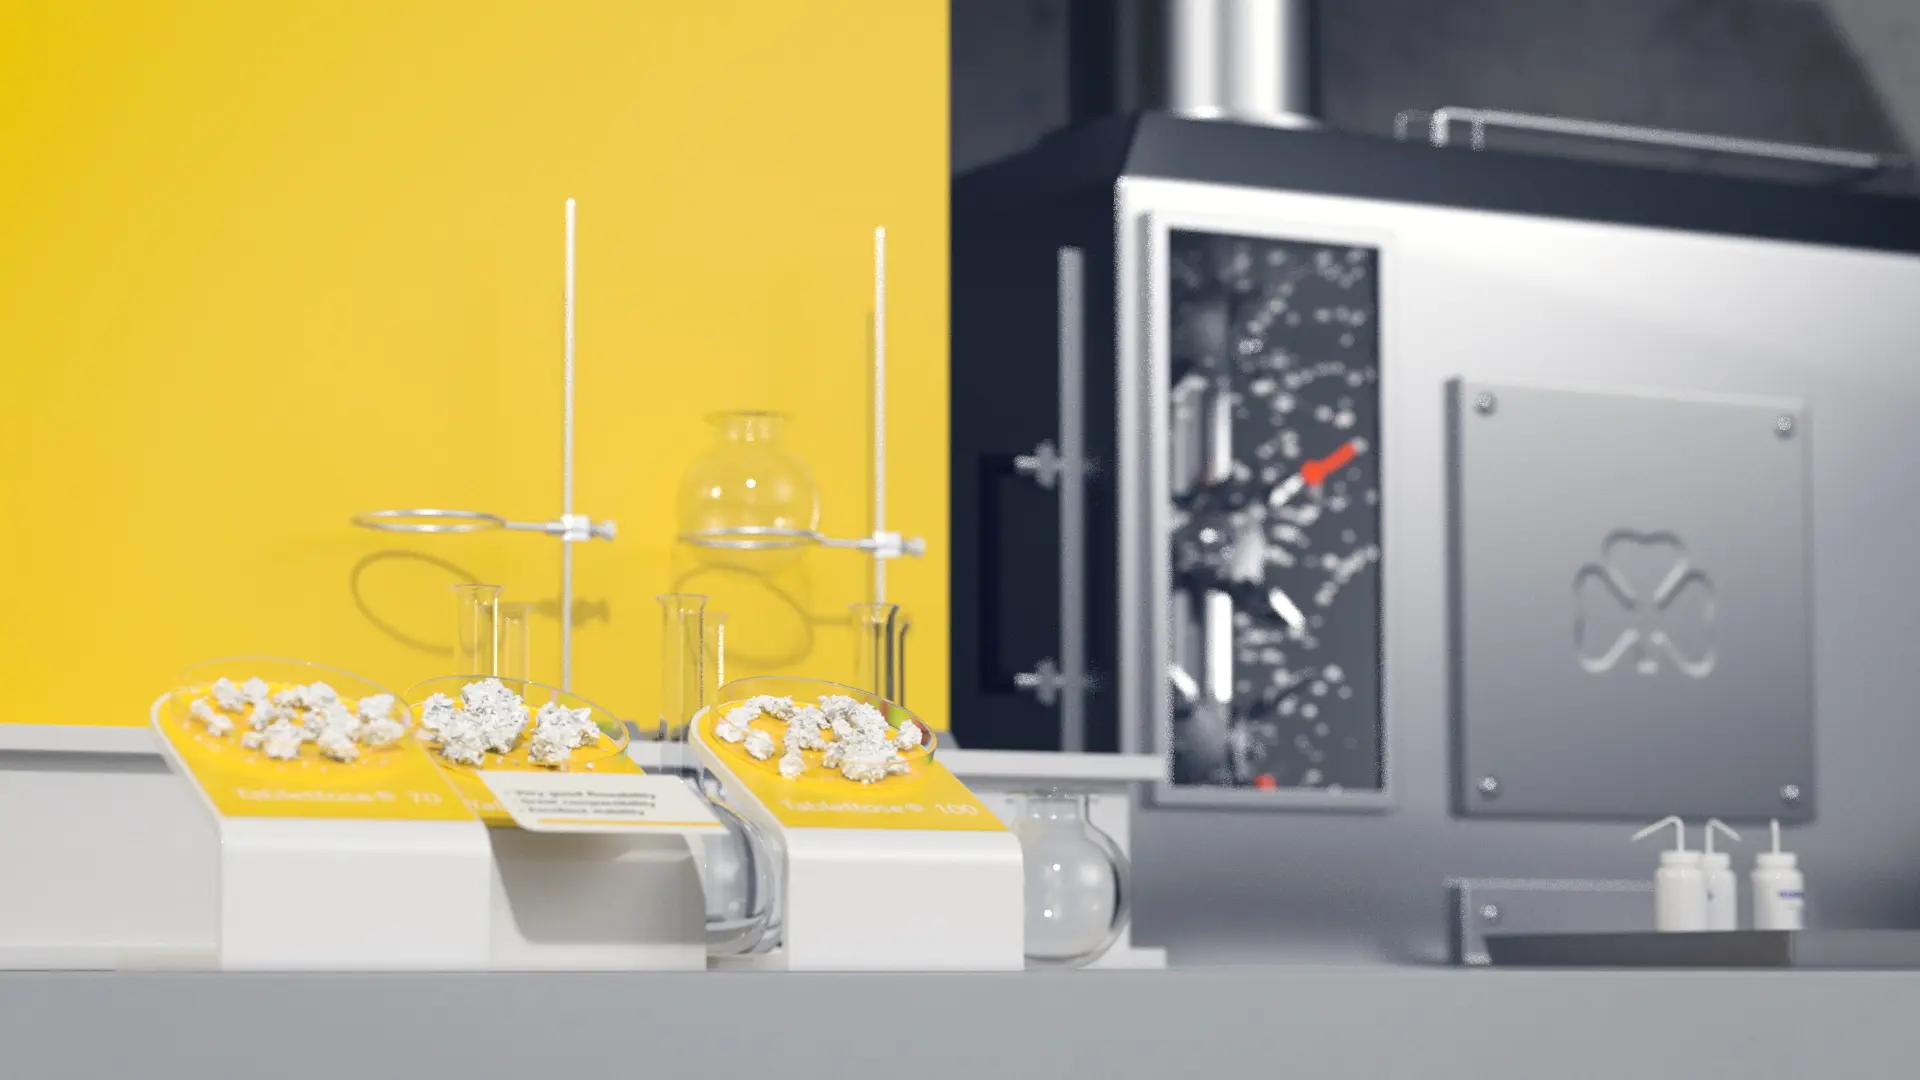 Laborgeräte und weiße chemische Substanzen auf gelbem Hintergrund in einem modernen Labor.